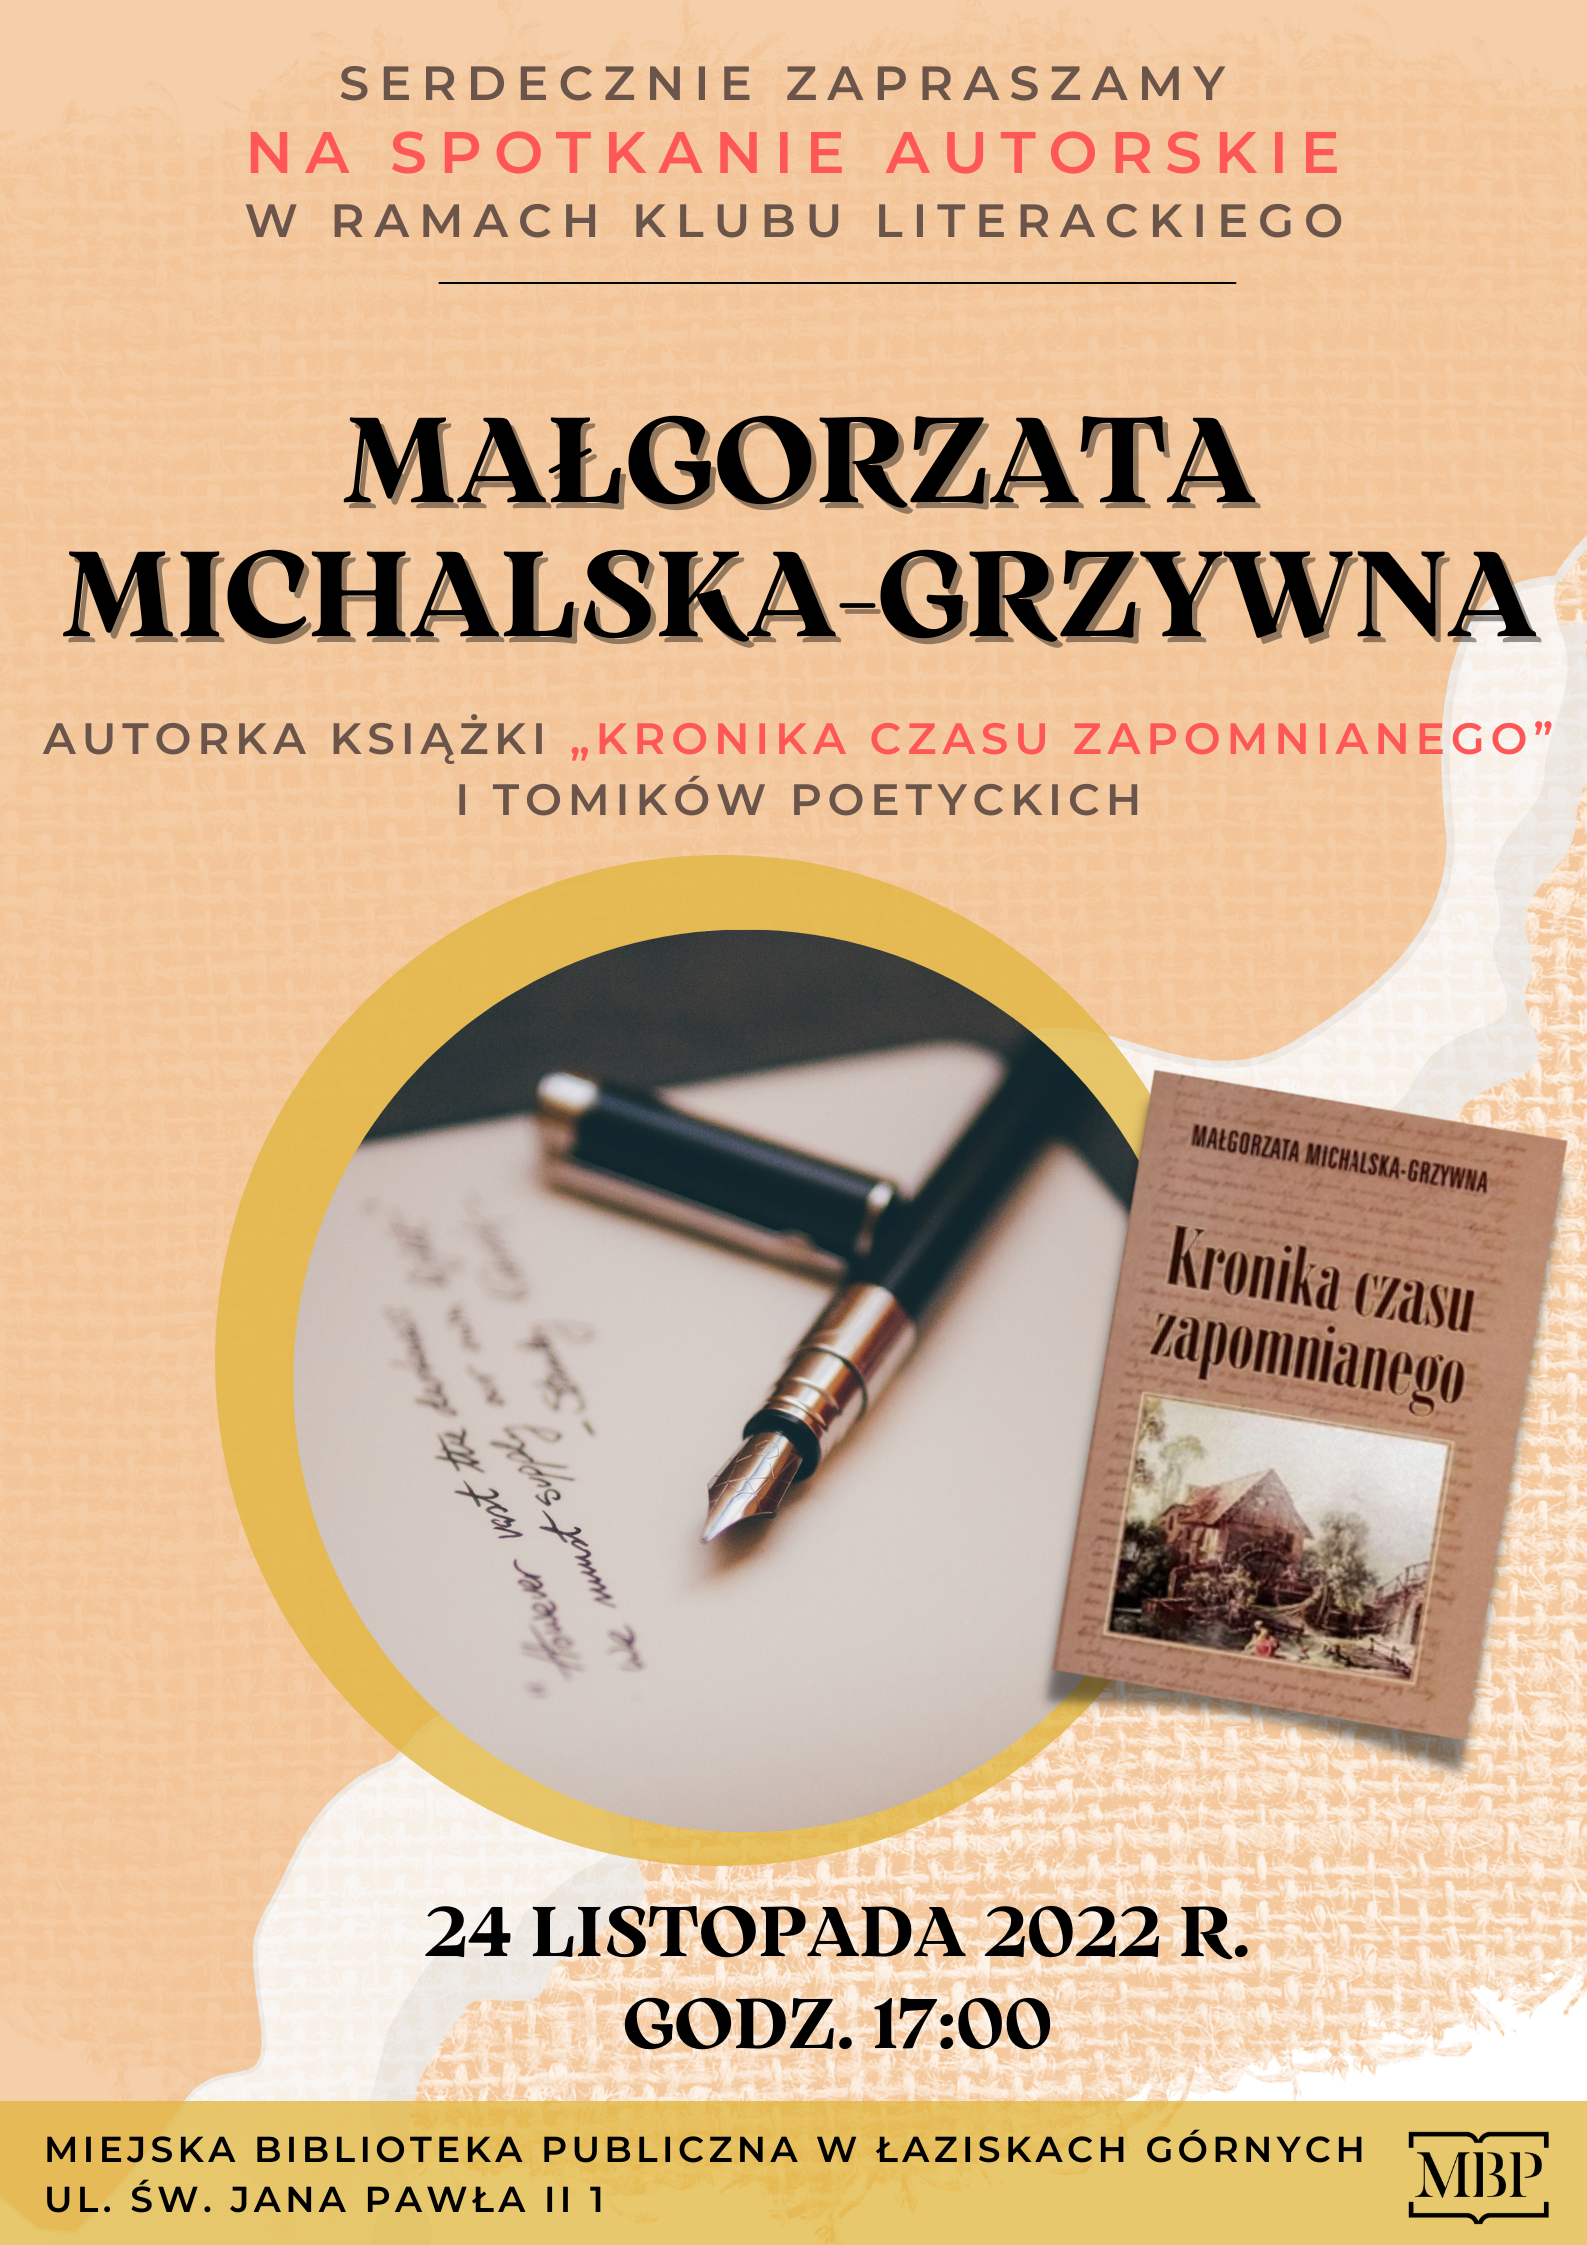 Spotkanie autorskie z Małgorzatą Michalską-Grzywna